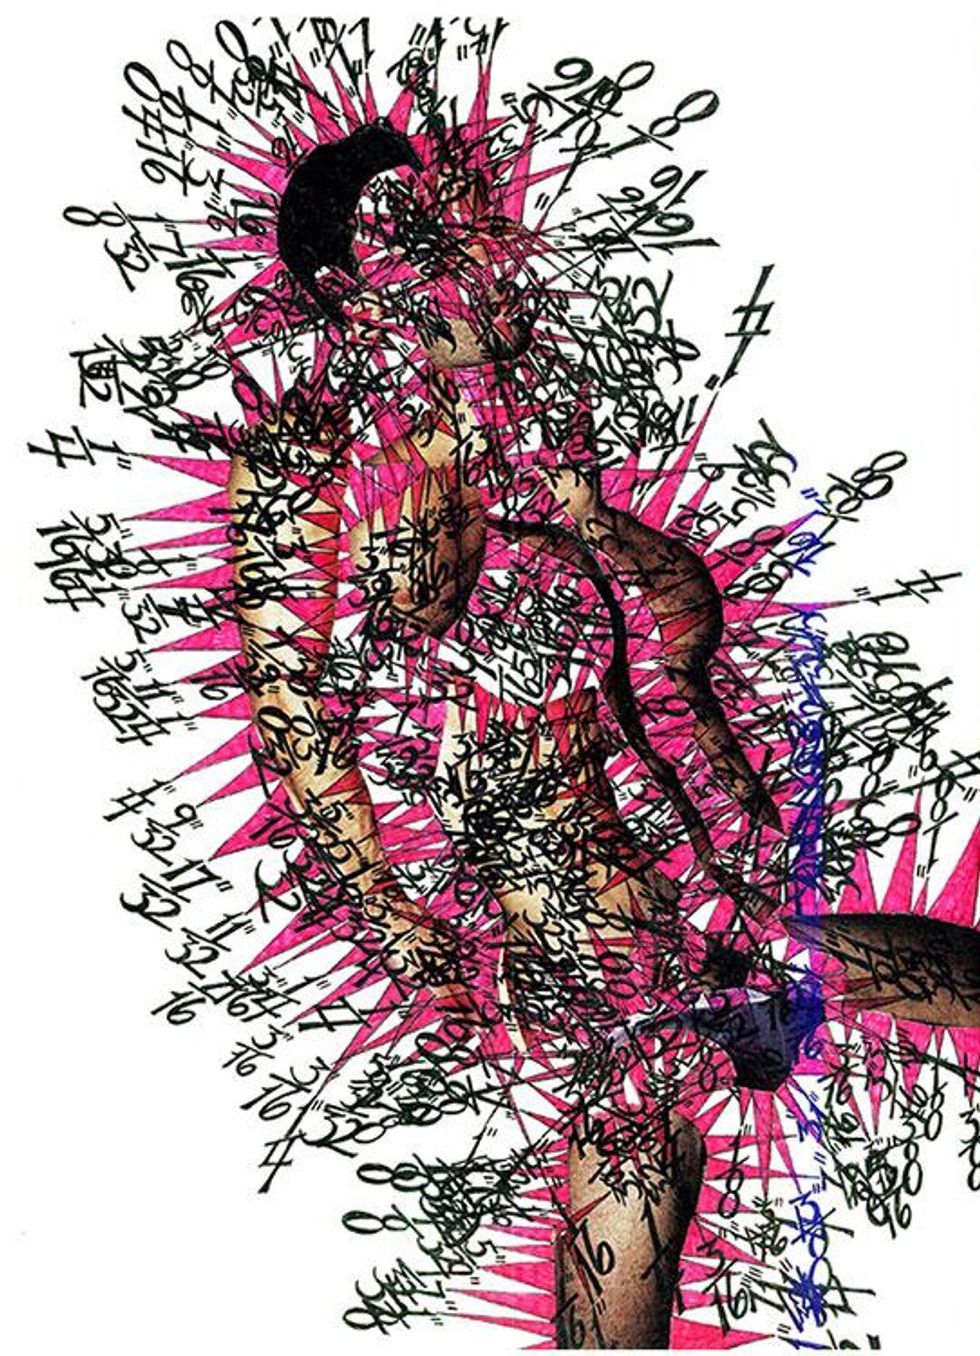 Enrique Castrejon Calculated Pink Sensation, 2013